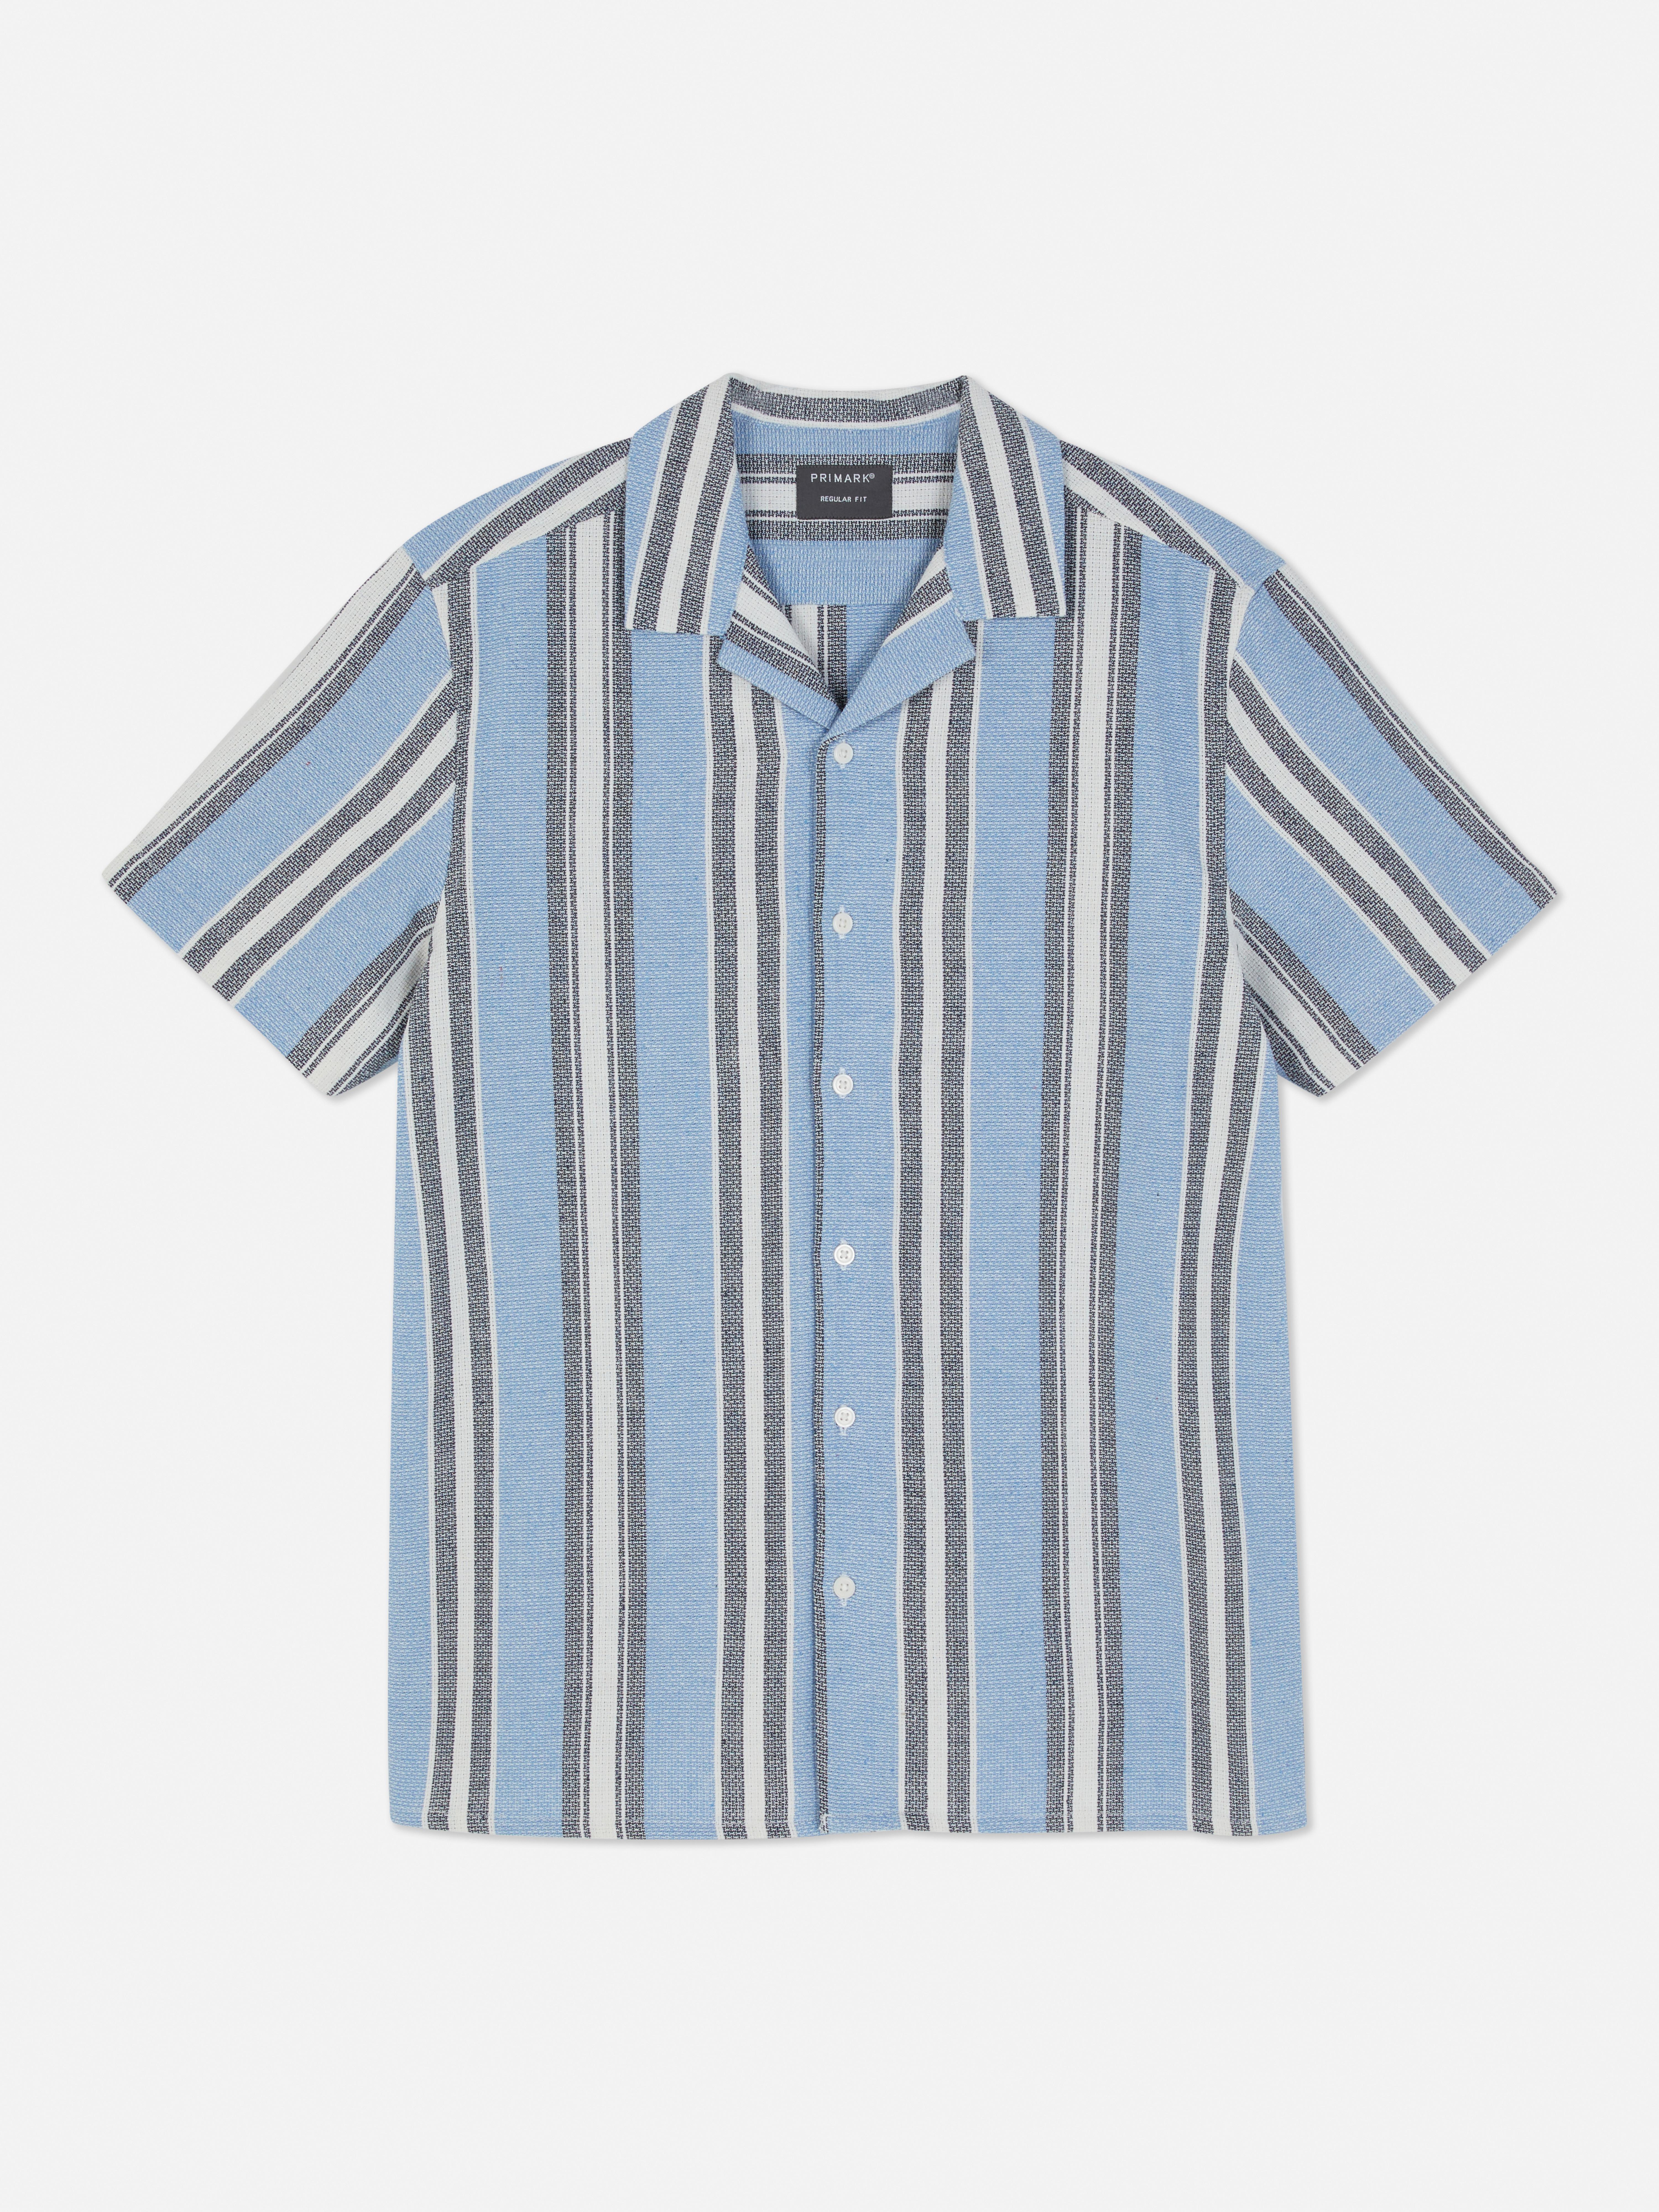 Wissen Openlijk grens Shirts for Men | Denim & Long Sleeve Shirts | Primark USA